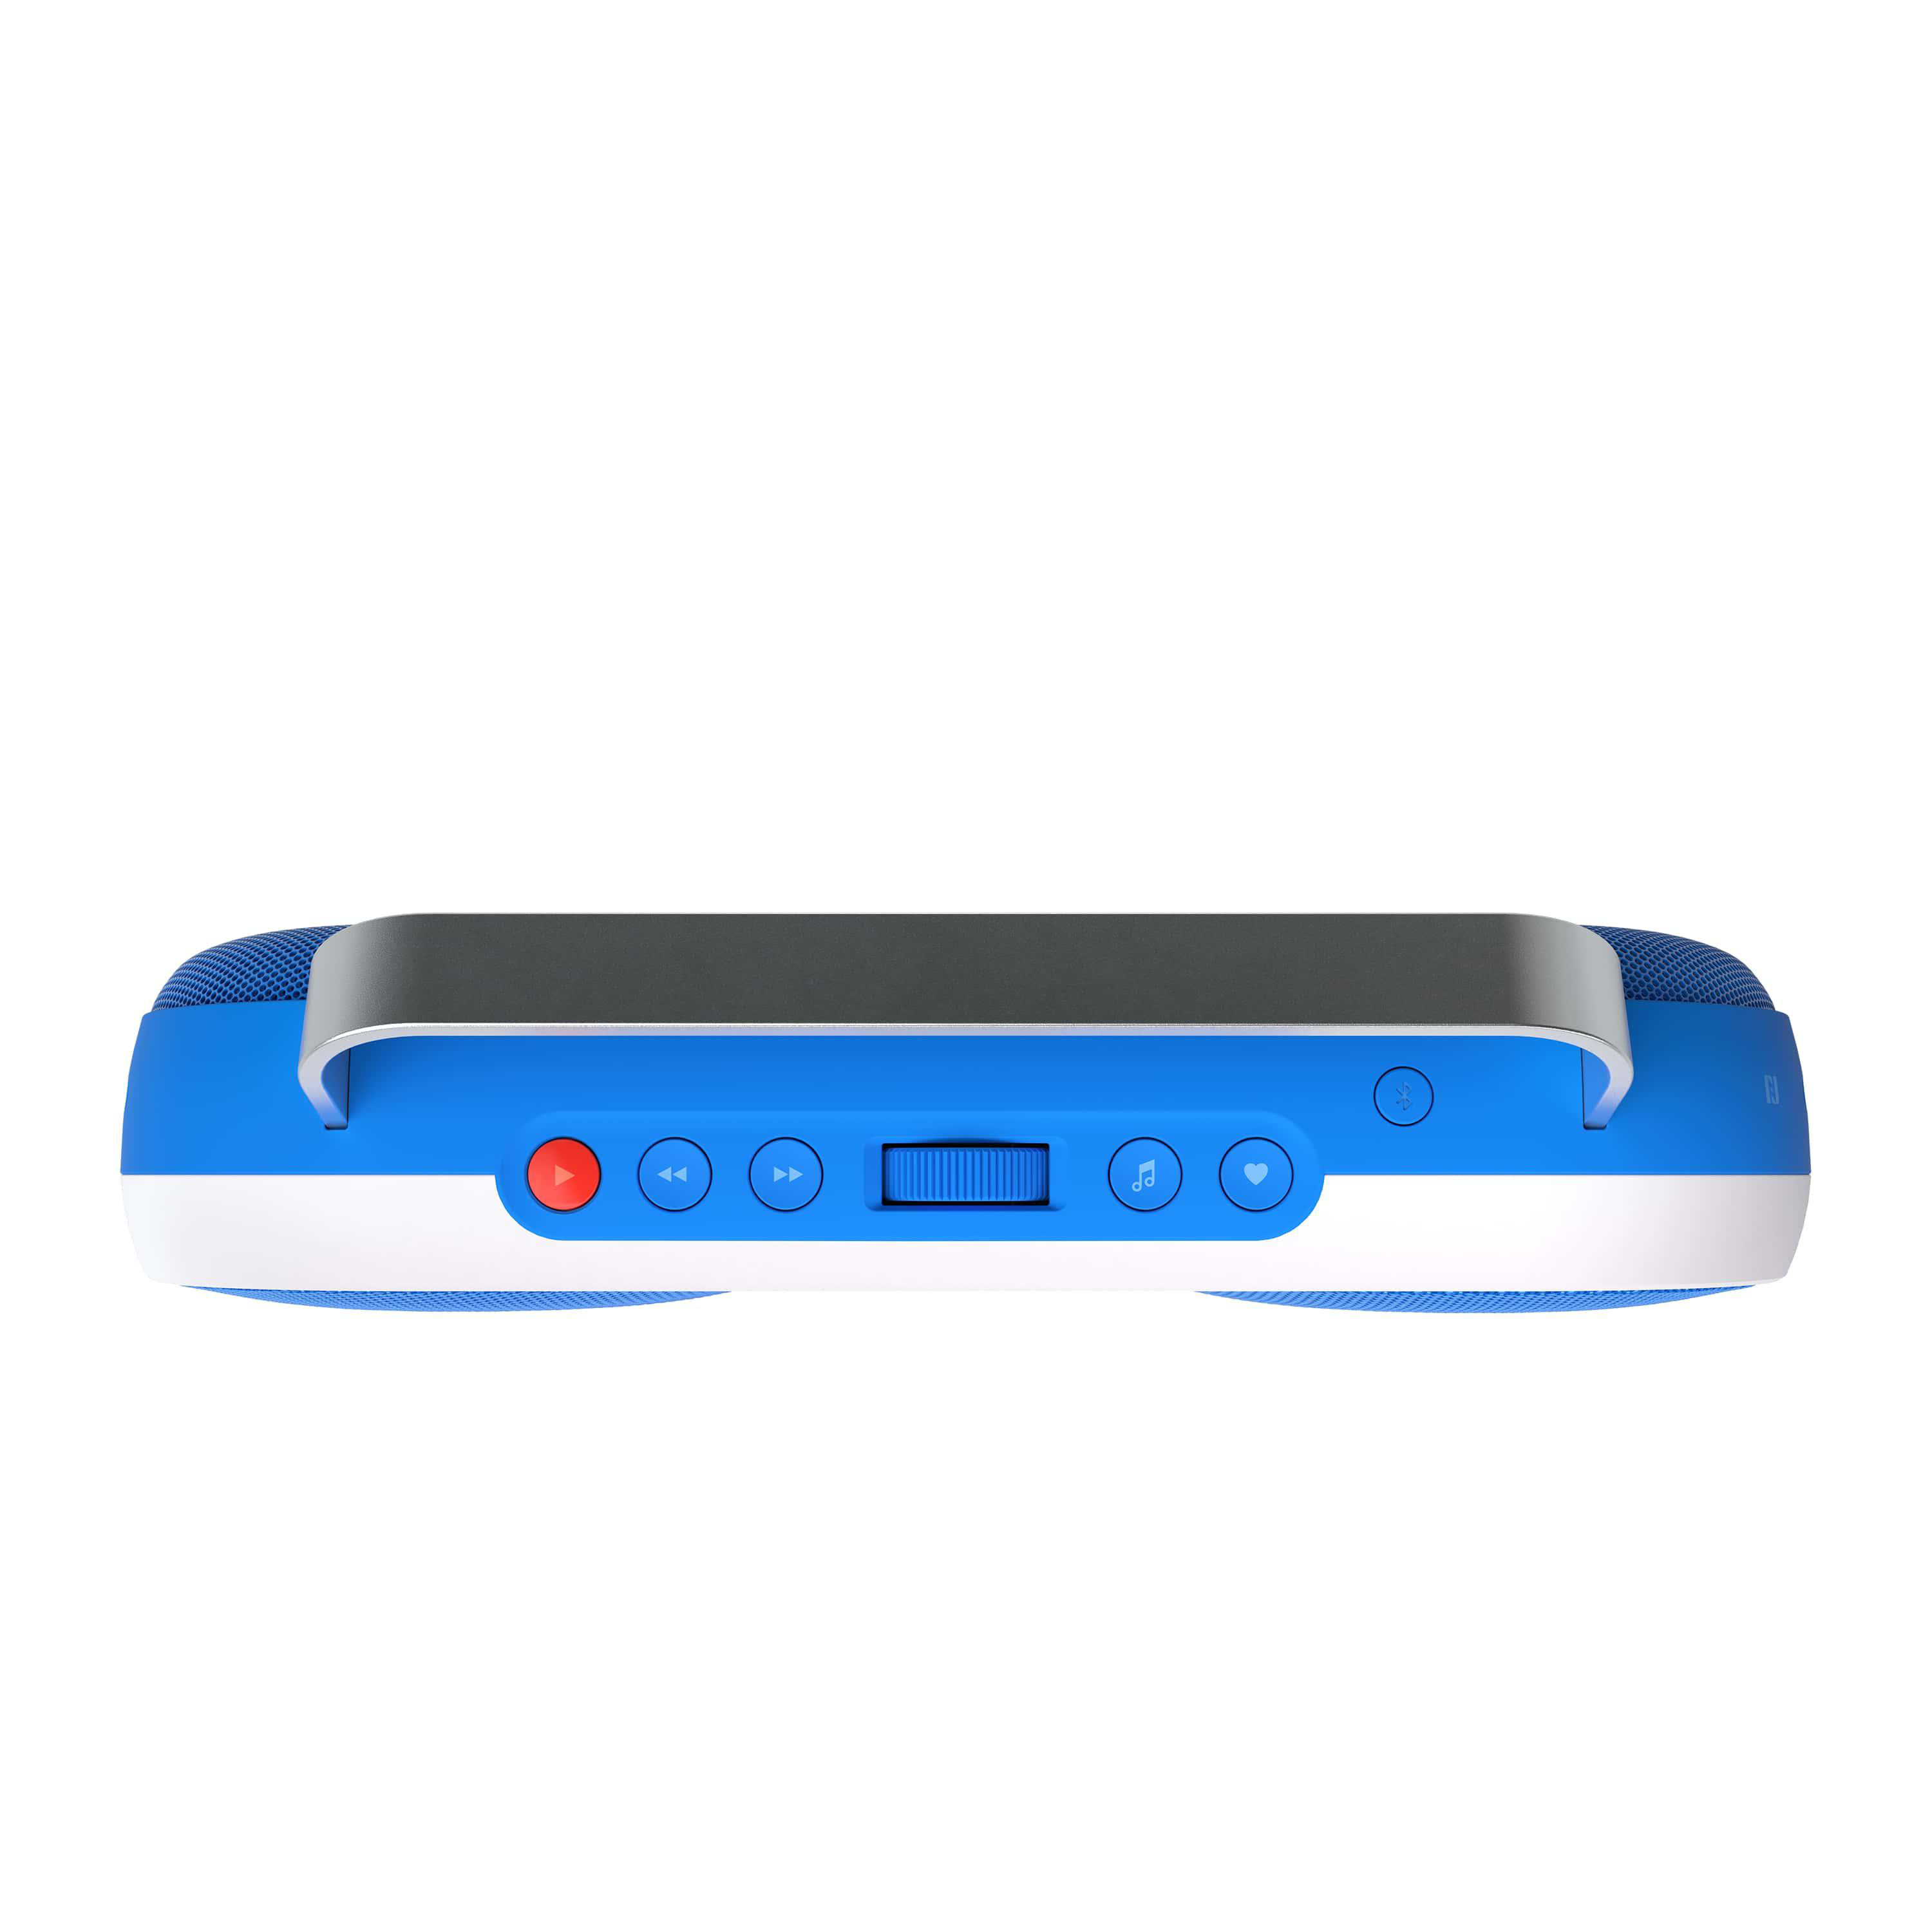 POLAROID Music Player P3 Blau/Weiß Lautsprecher , Bluetooth